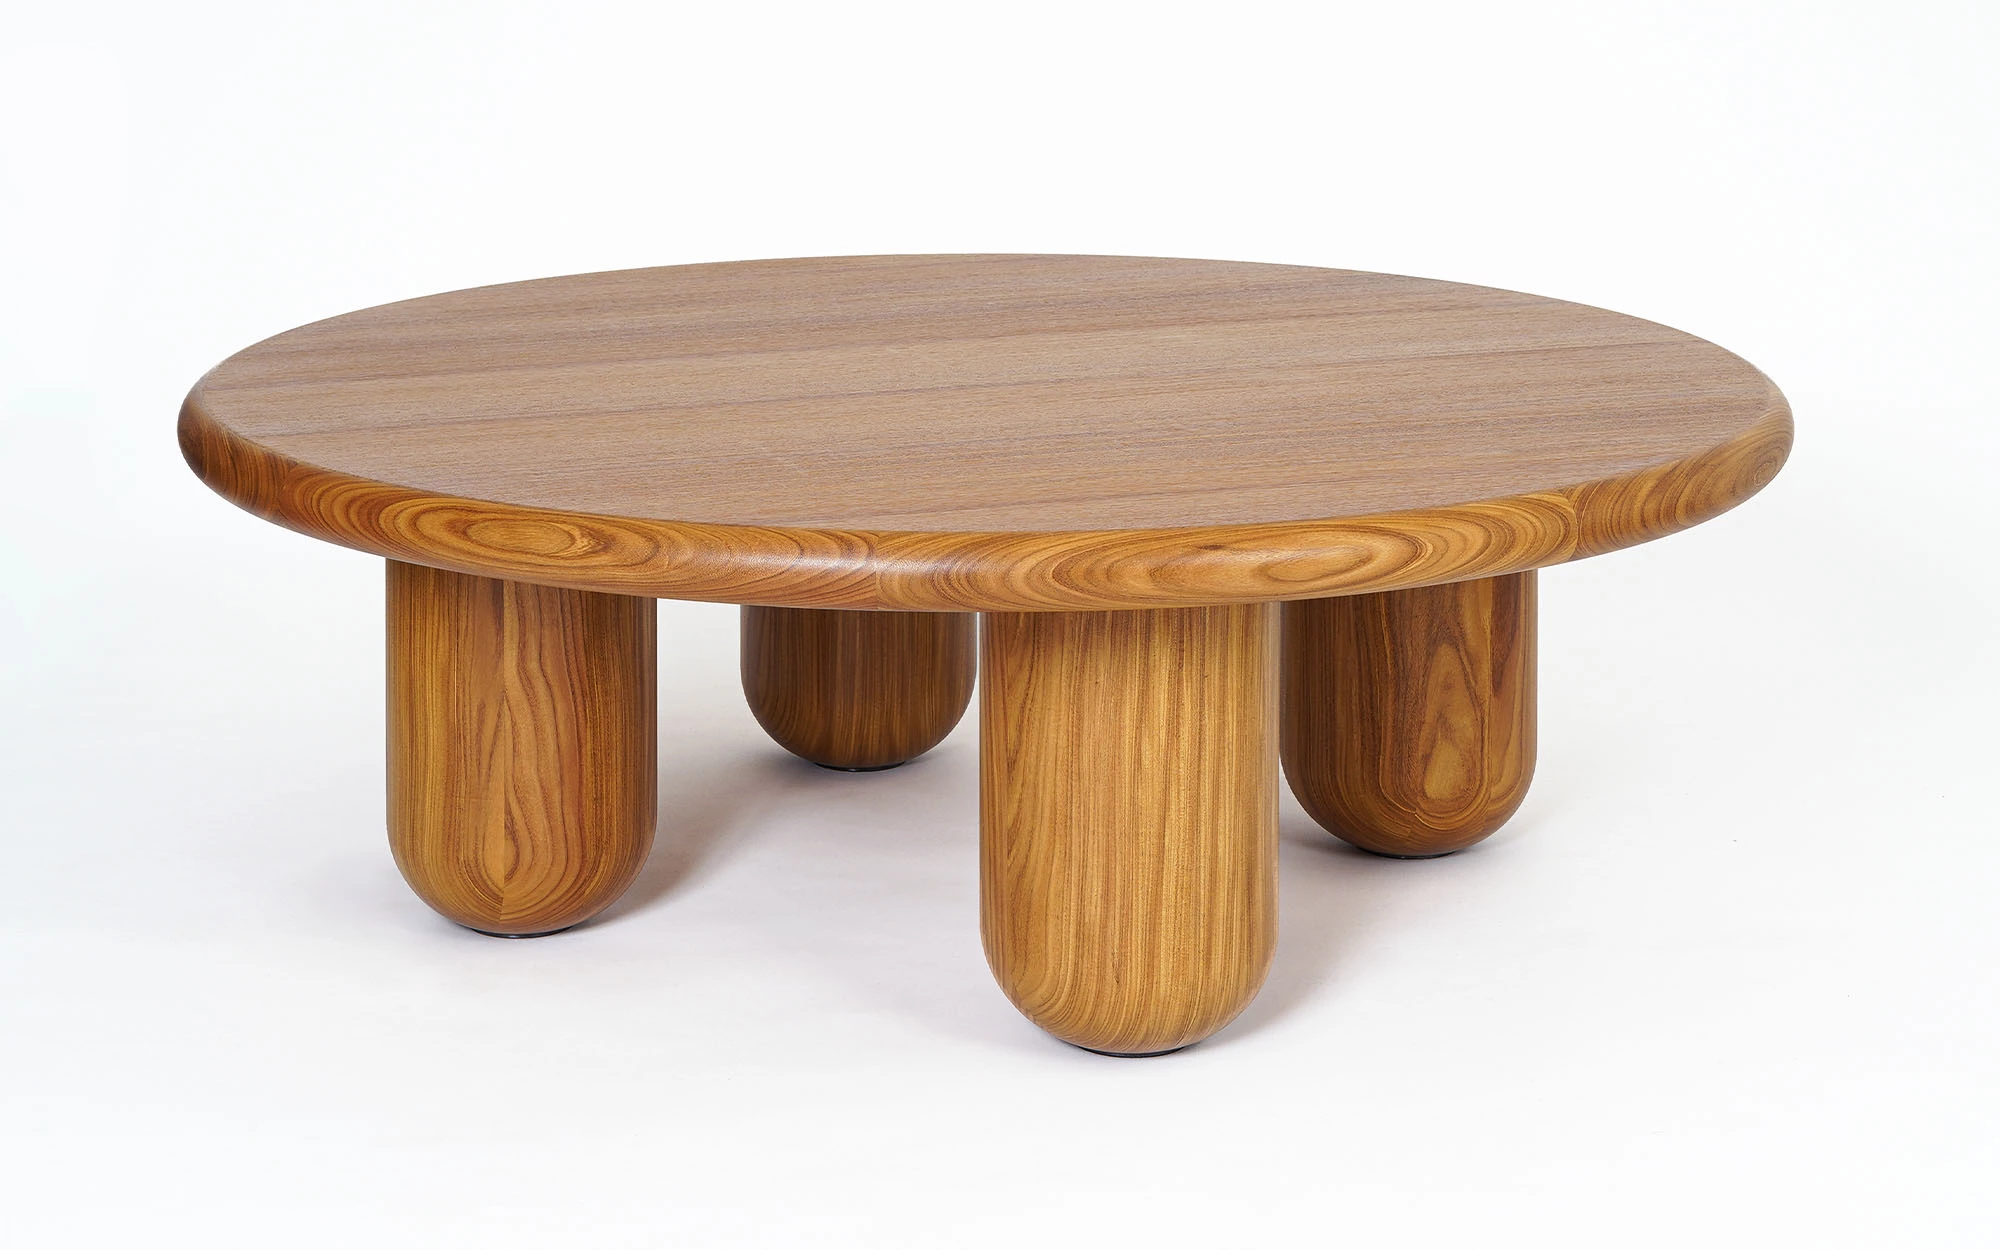 Organism coffee table - Jaime Hayon - coffee-table - Galerie kreo